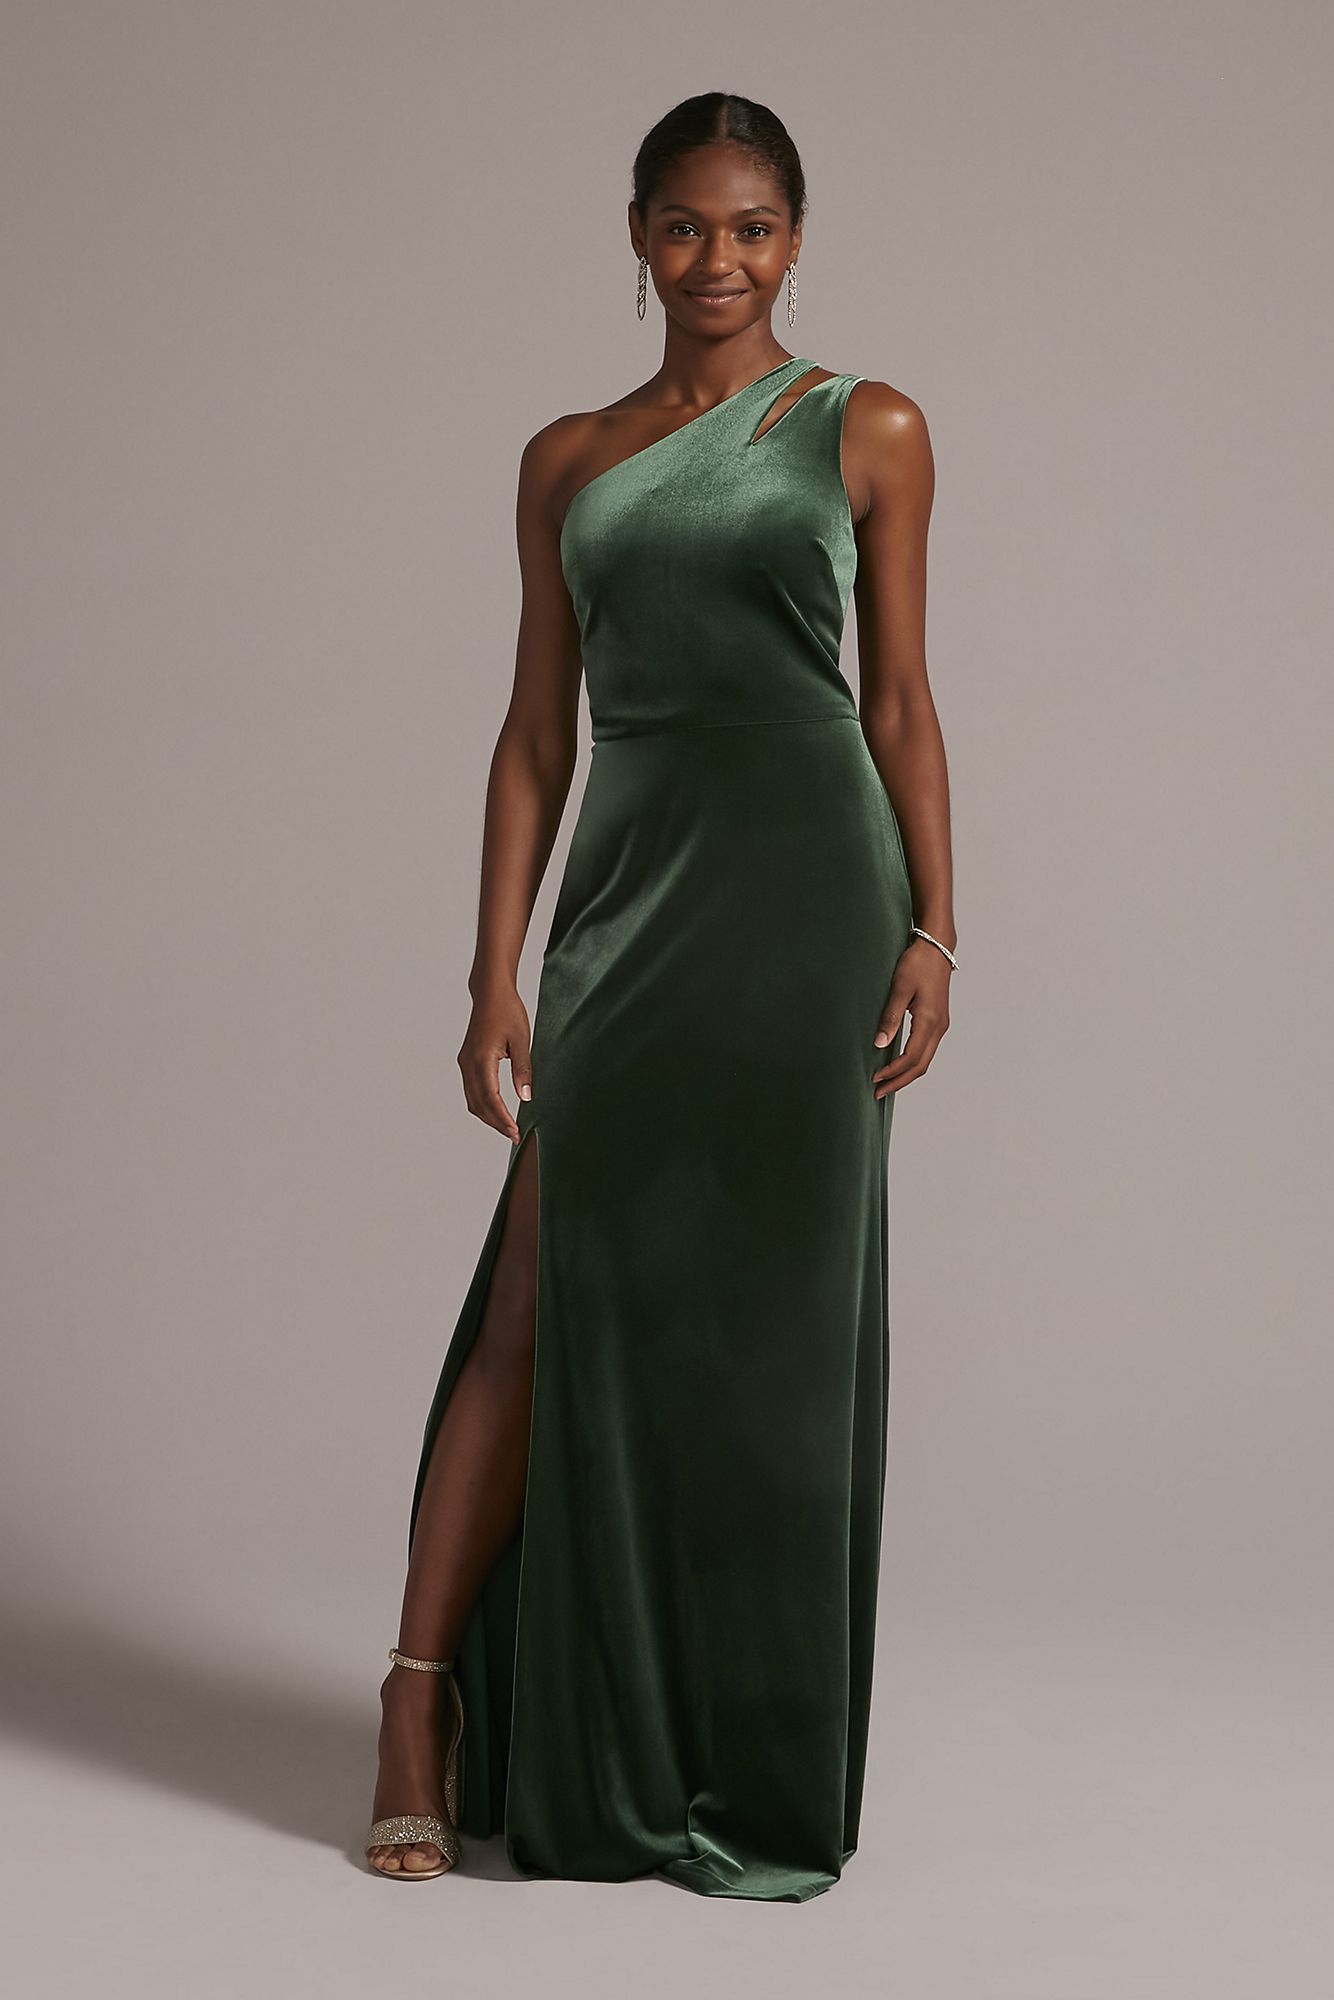 Cutout One-Shoulder Velvet Gown with Skirt Slit WBM2798V1 [WBM2798V1 ...